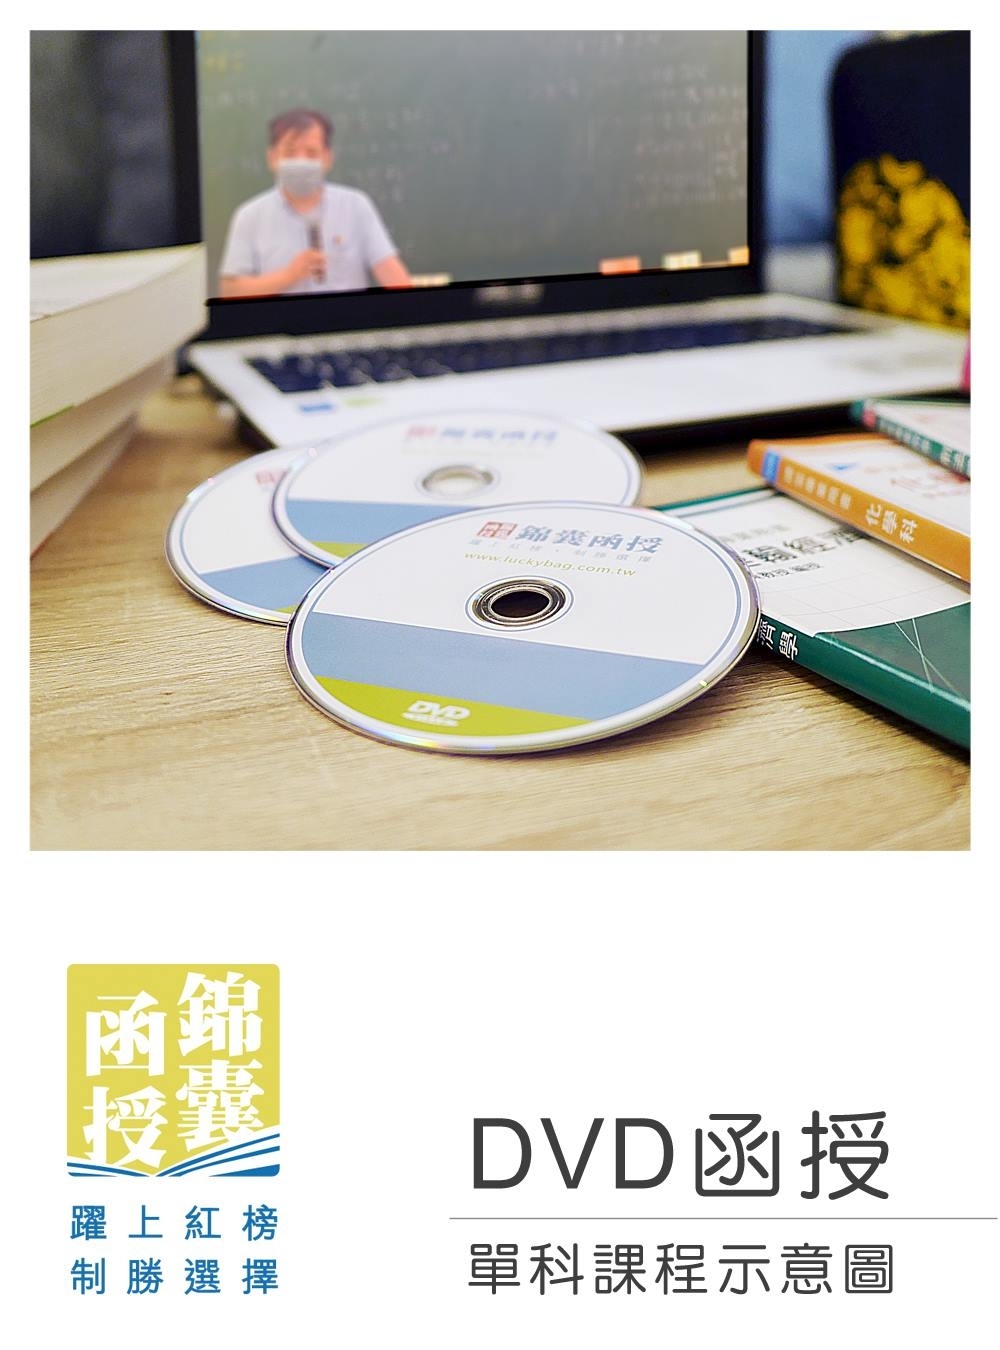 【DVD函授】公共經濟學(正規班&進階班)-單科課程(111...